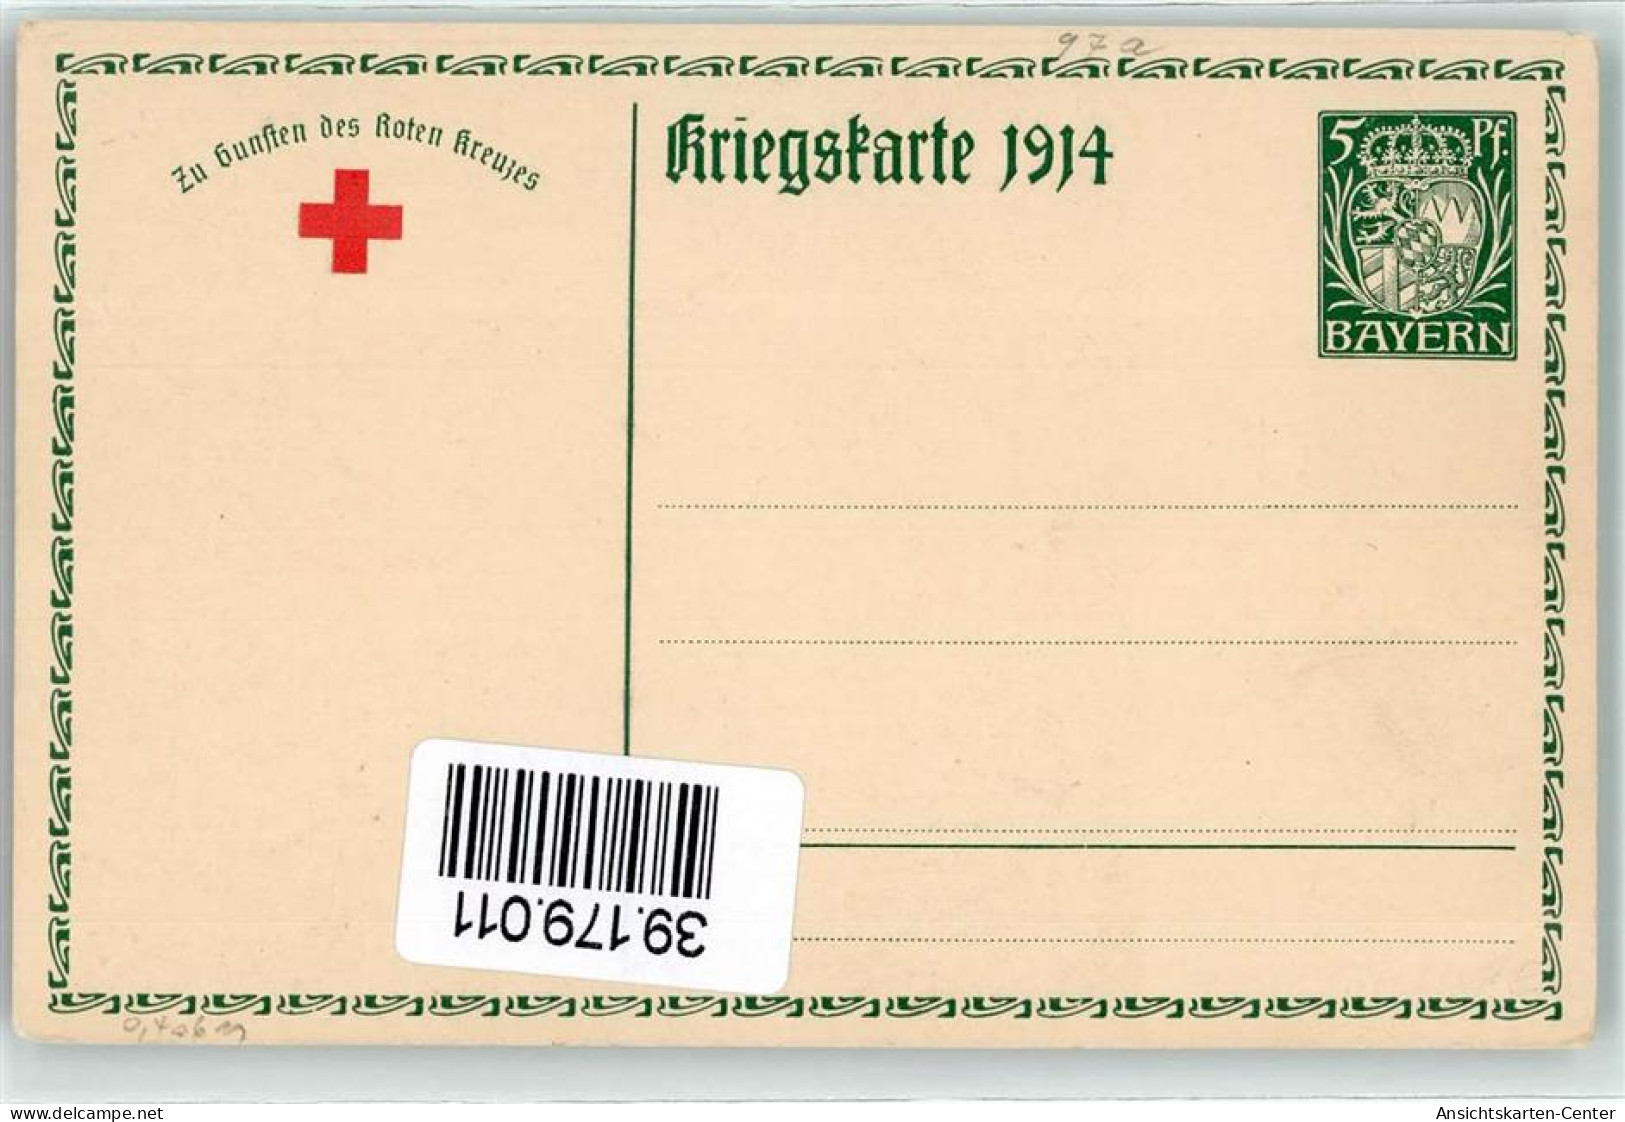 39179011 - Ludwig III Koenig Von Bayern  Gemaelde Von Firle Faksimile Unterschrift  AK - Postkaarten